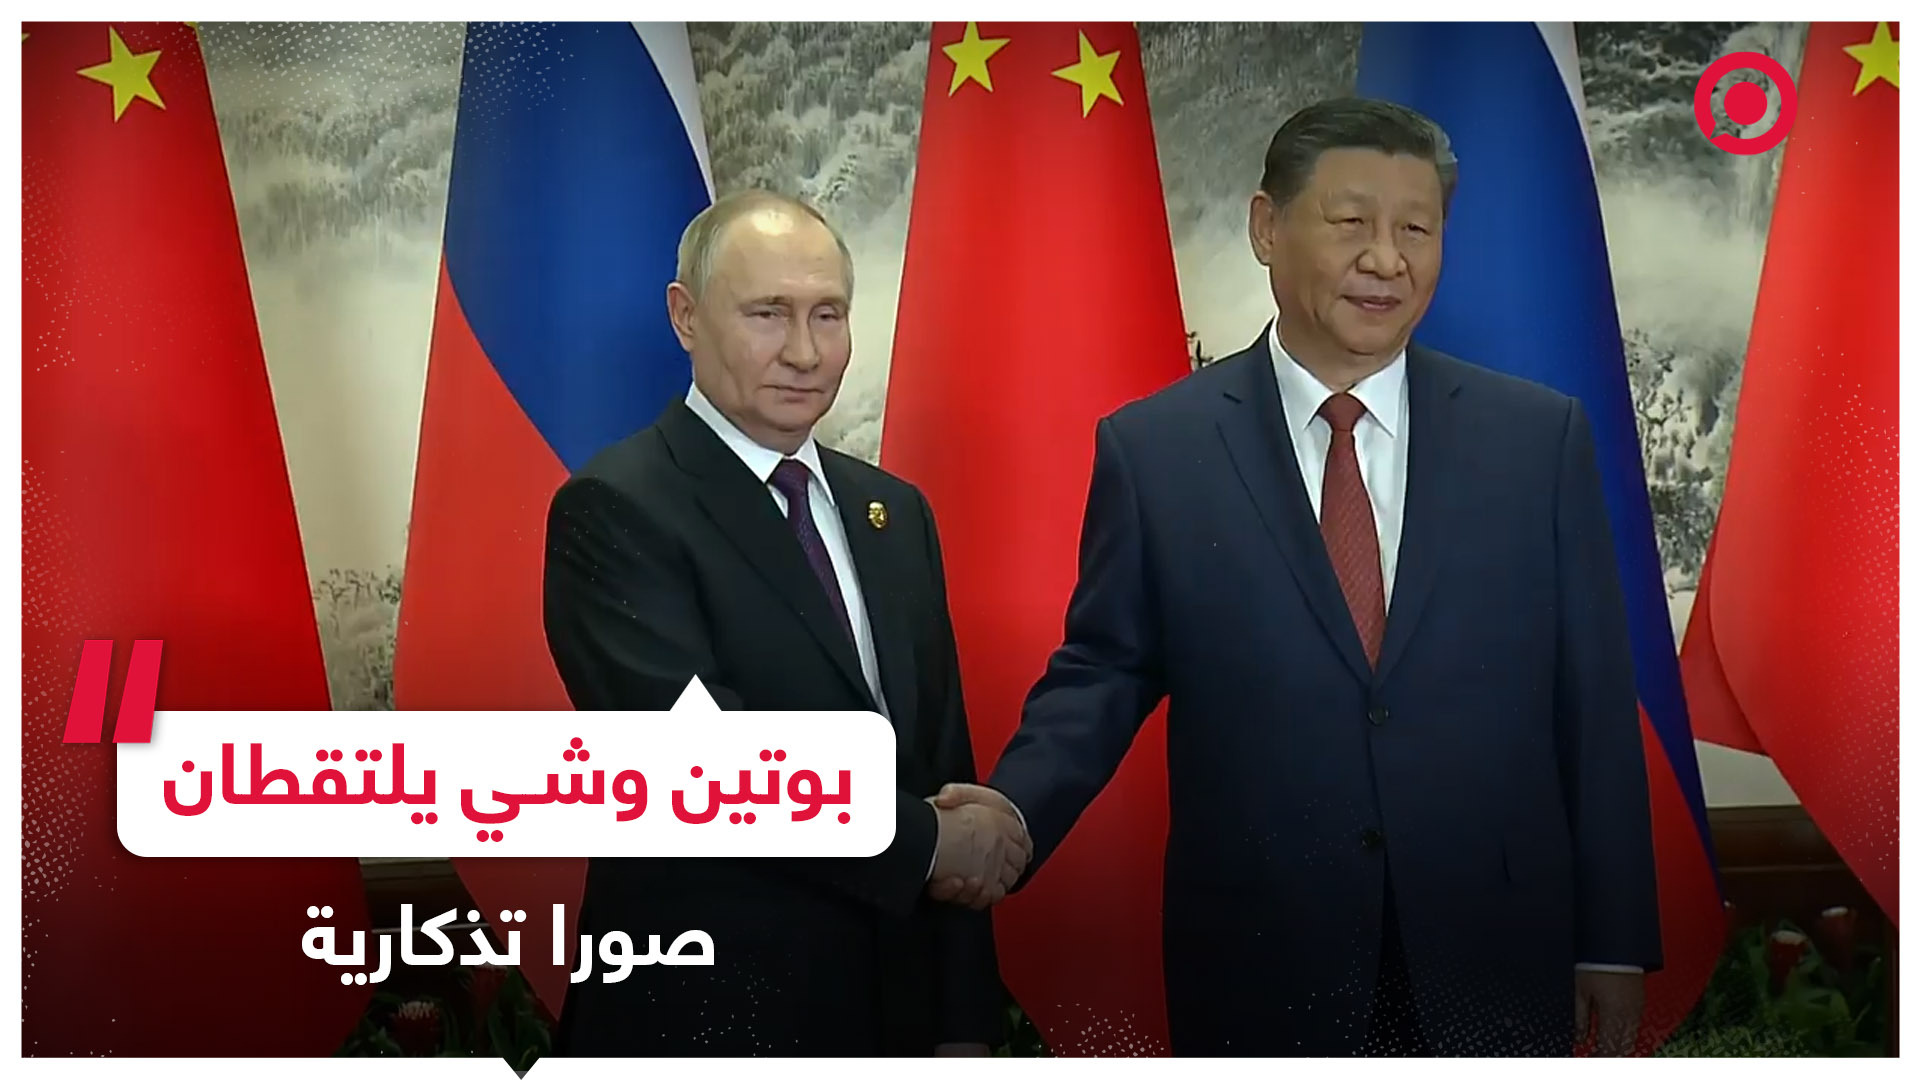 الرئيس الروسي ونظيره الصيني يلتقطان صورا تذكارية قبل بدء المفاوضات